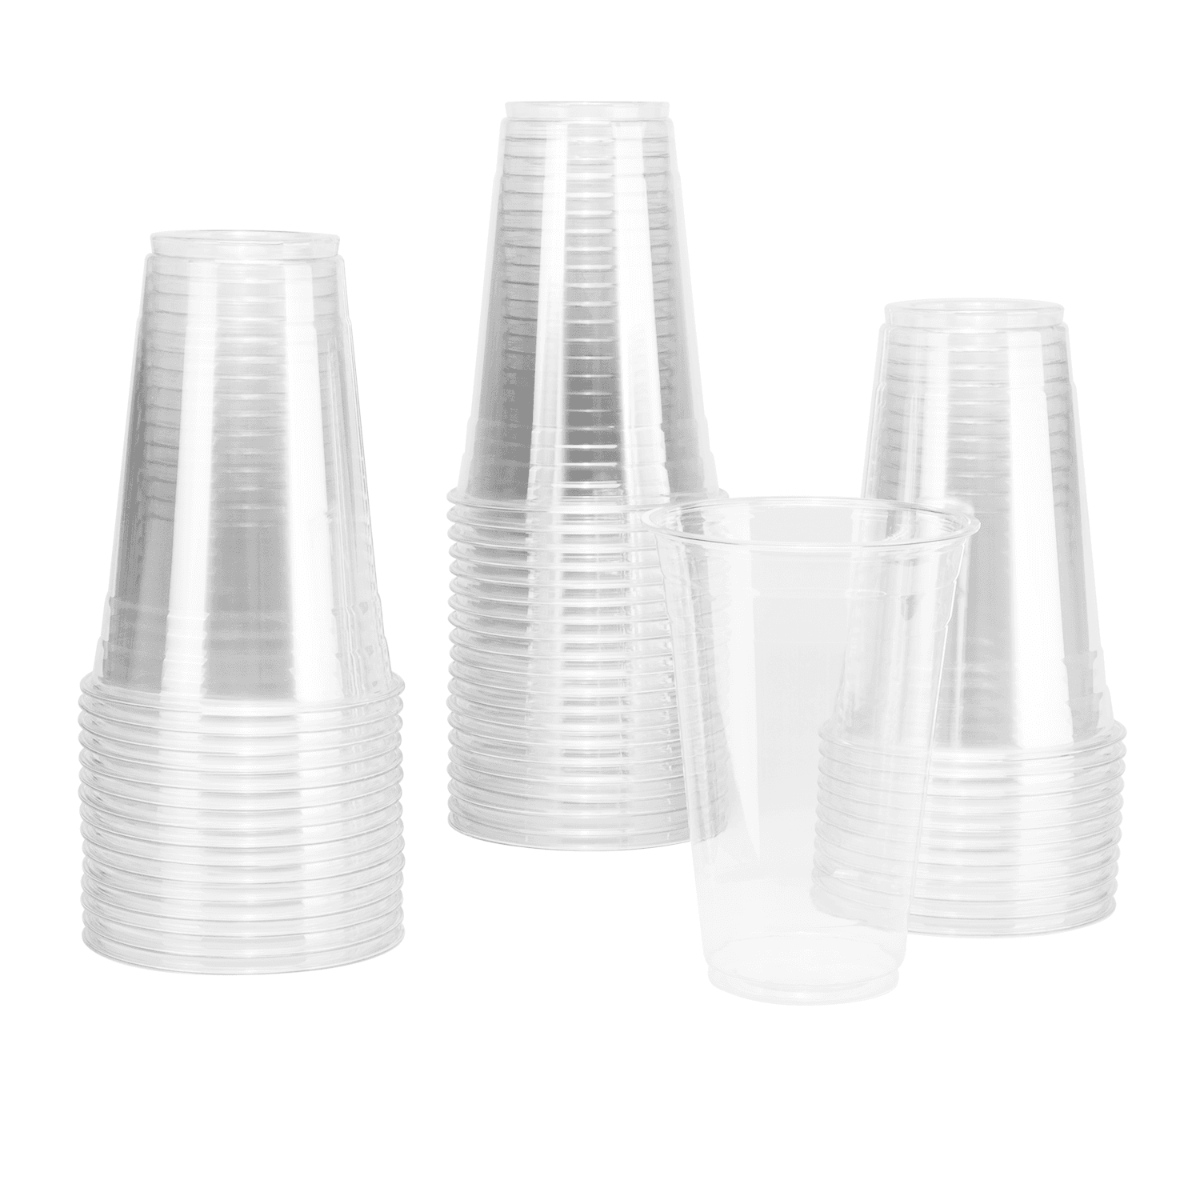 wholesale 20oz custom cups in bulk